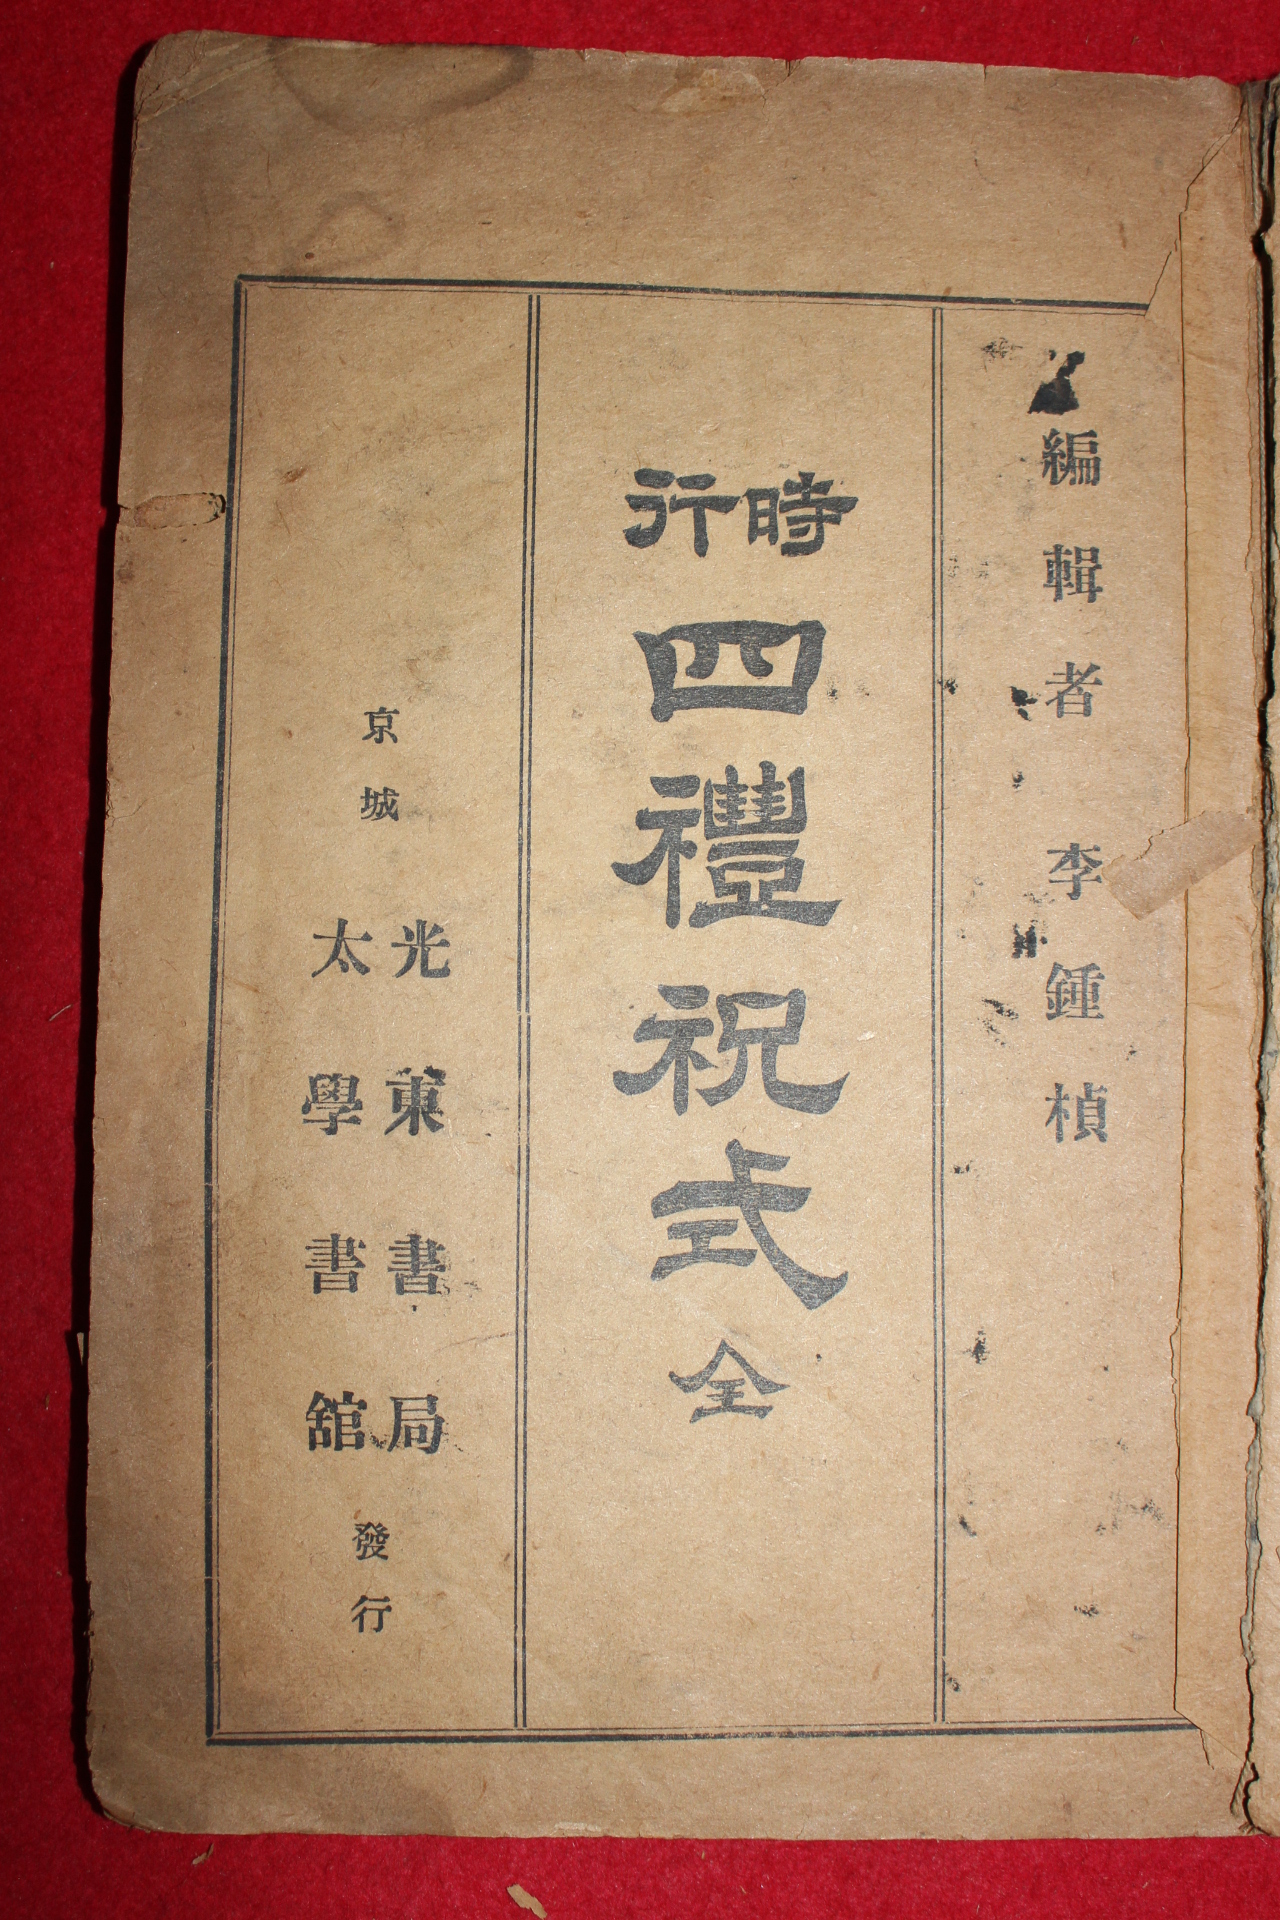 1918년(대정7년) 시행사례축식(時行四禮祝式)